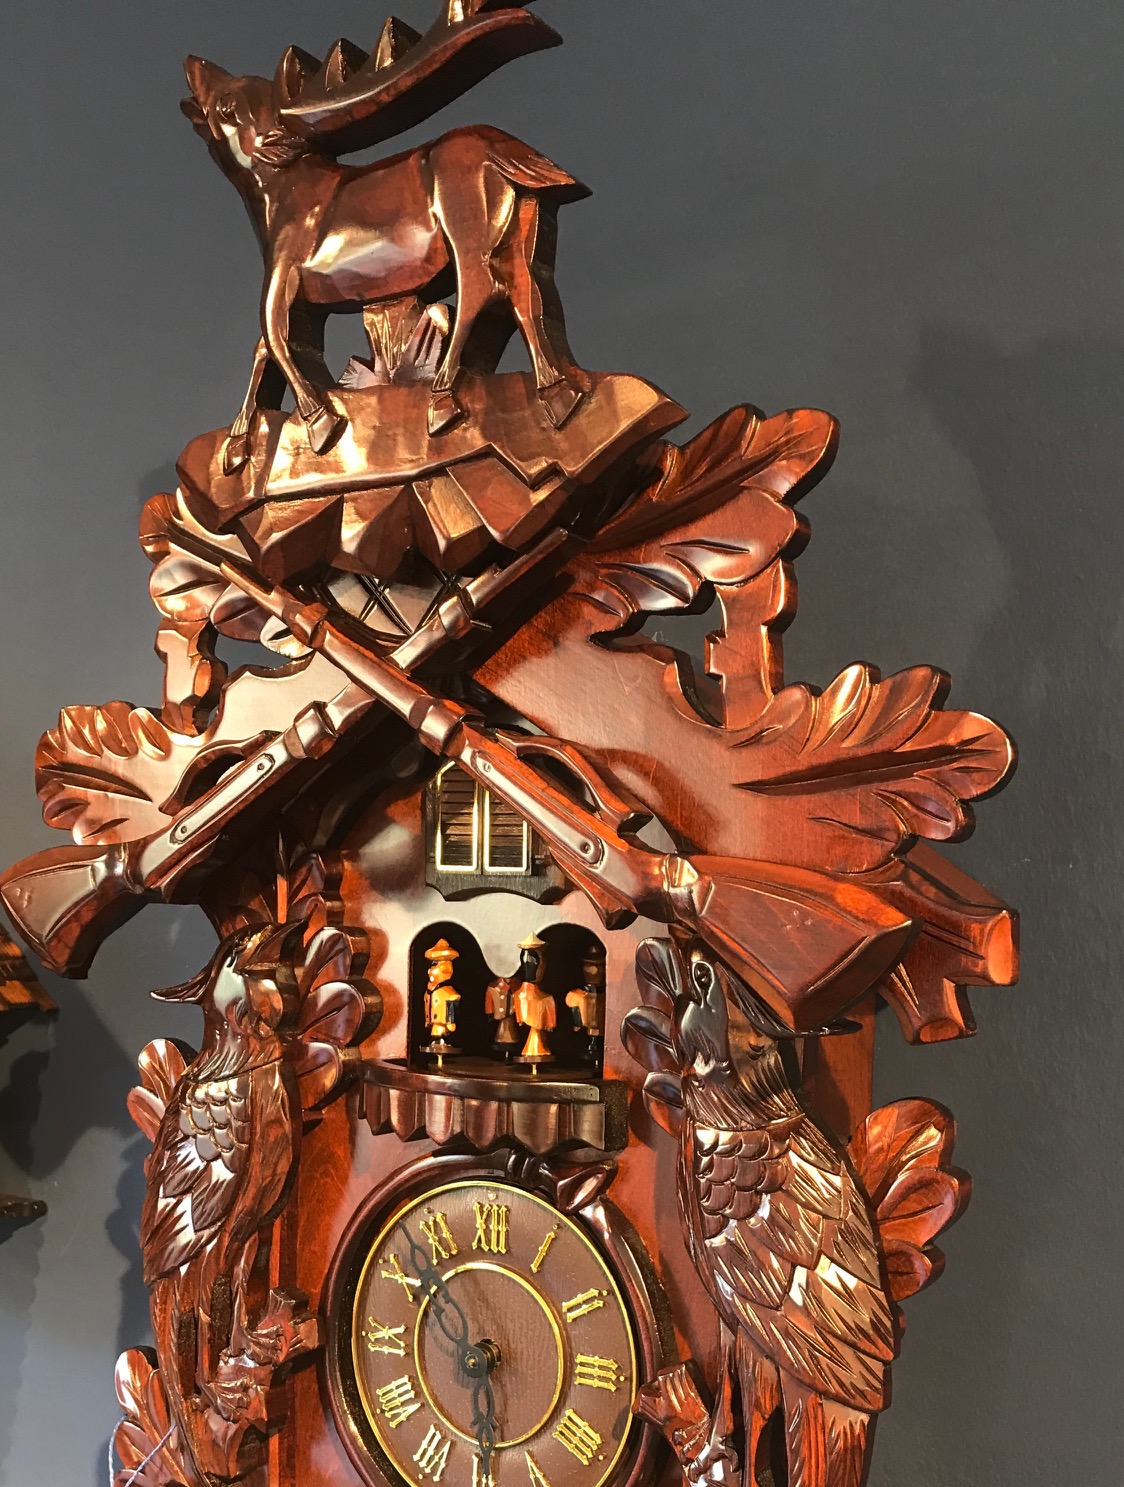 Reloj de cuco fabricado en madera tallada, pintado a mano y